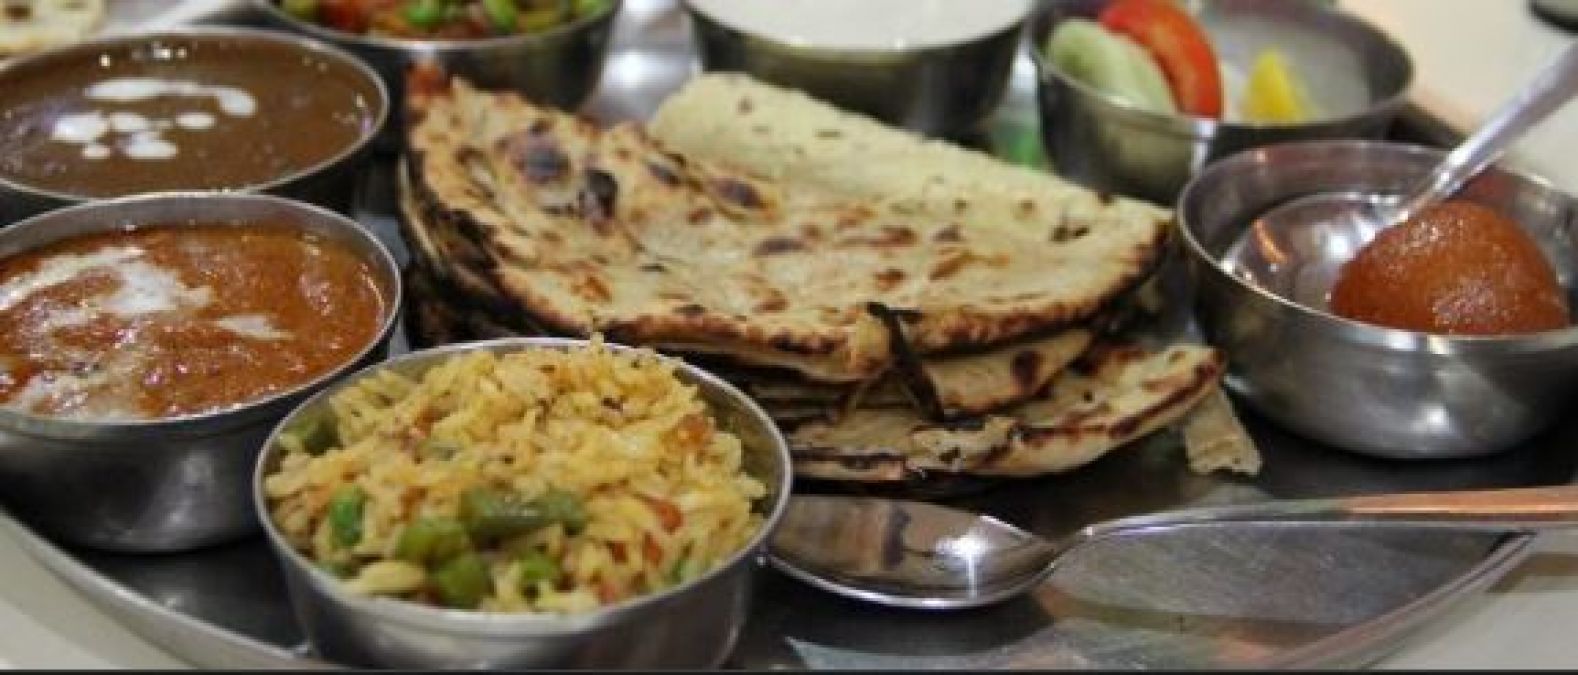 दिल्ली में ये हैं सबसे बेस्ट शाकाहारी रेस्टोरेंट, घूमने जा रहे हैं तो ले खाने का आनंद